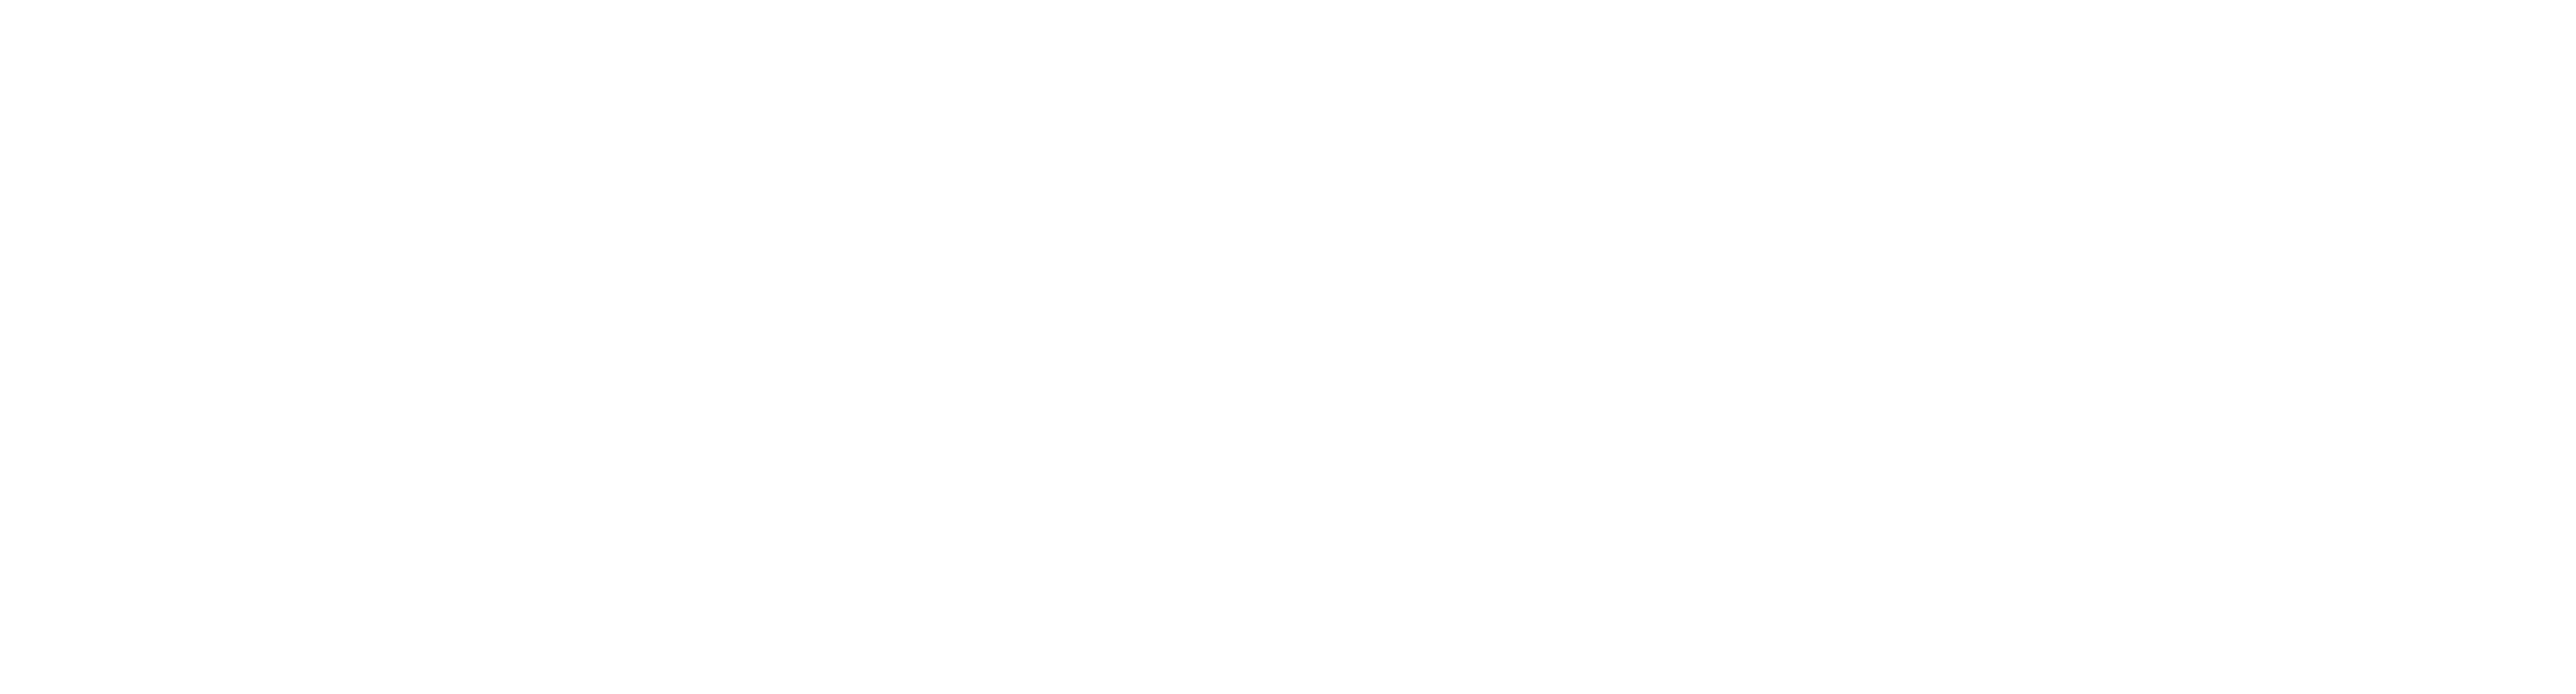 wynwood logo